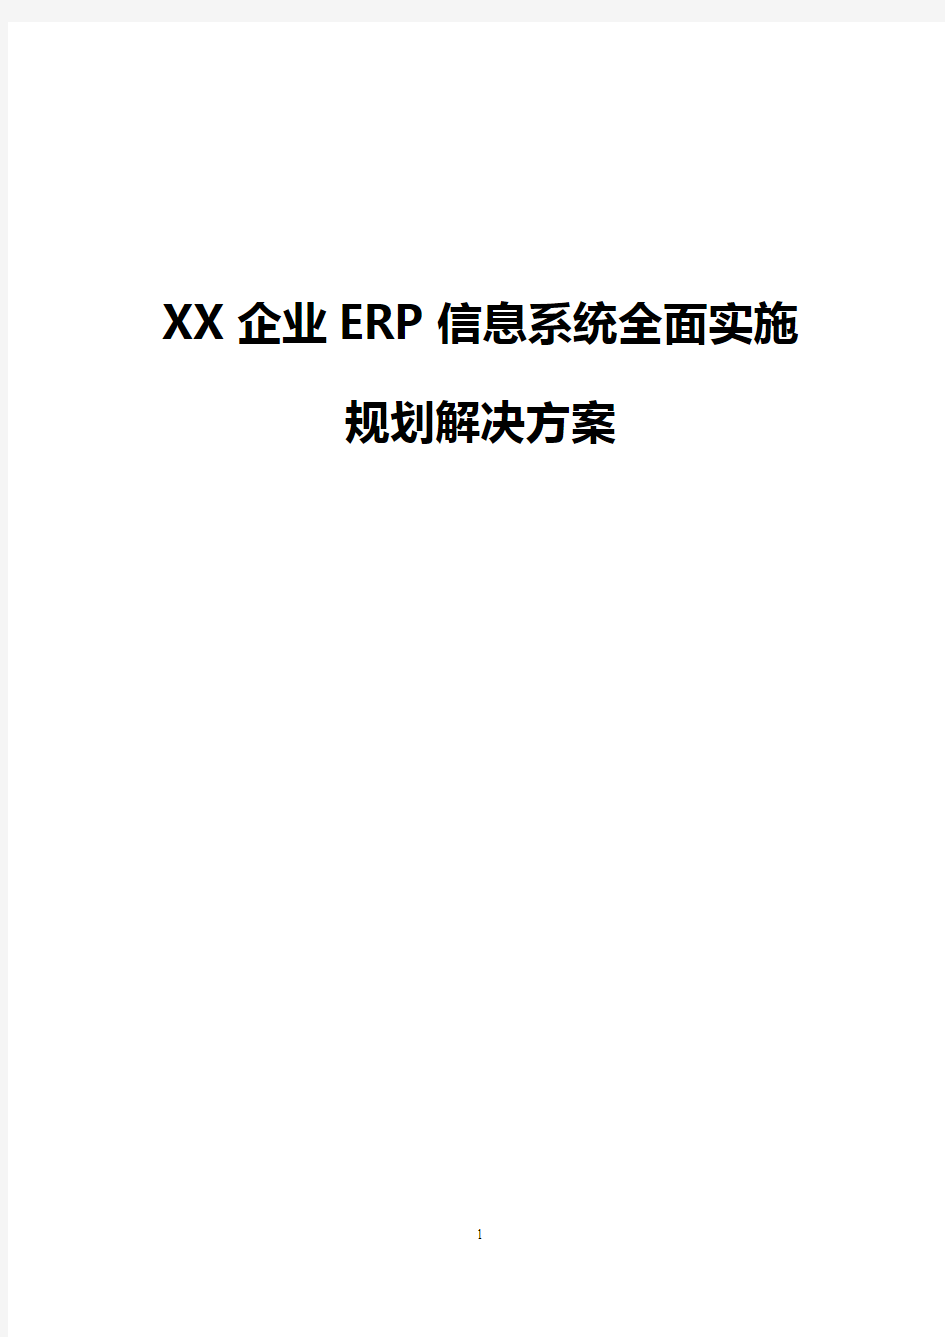 【实用】XX企业ERP信息系统全面实施规划项目解决方案